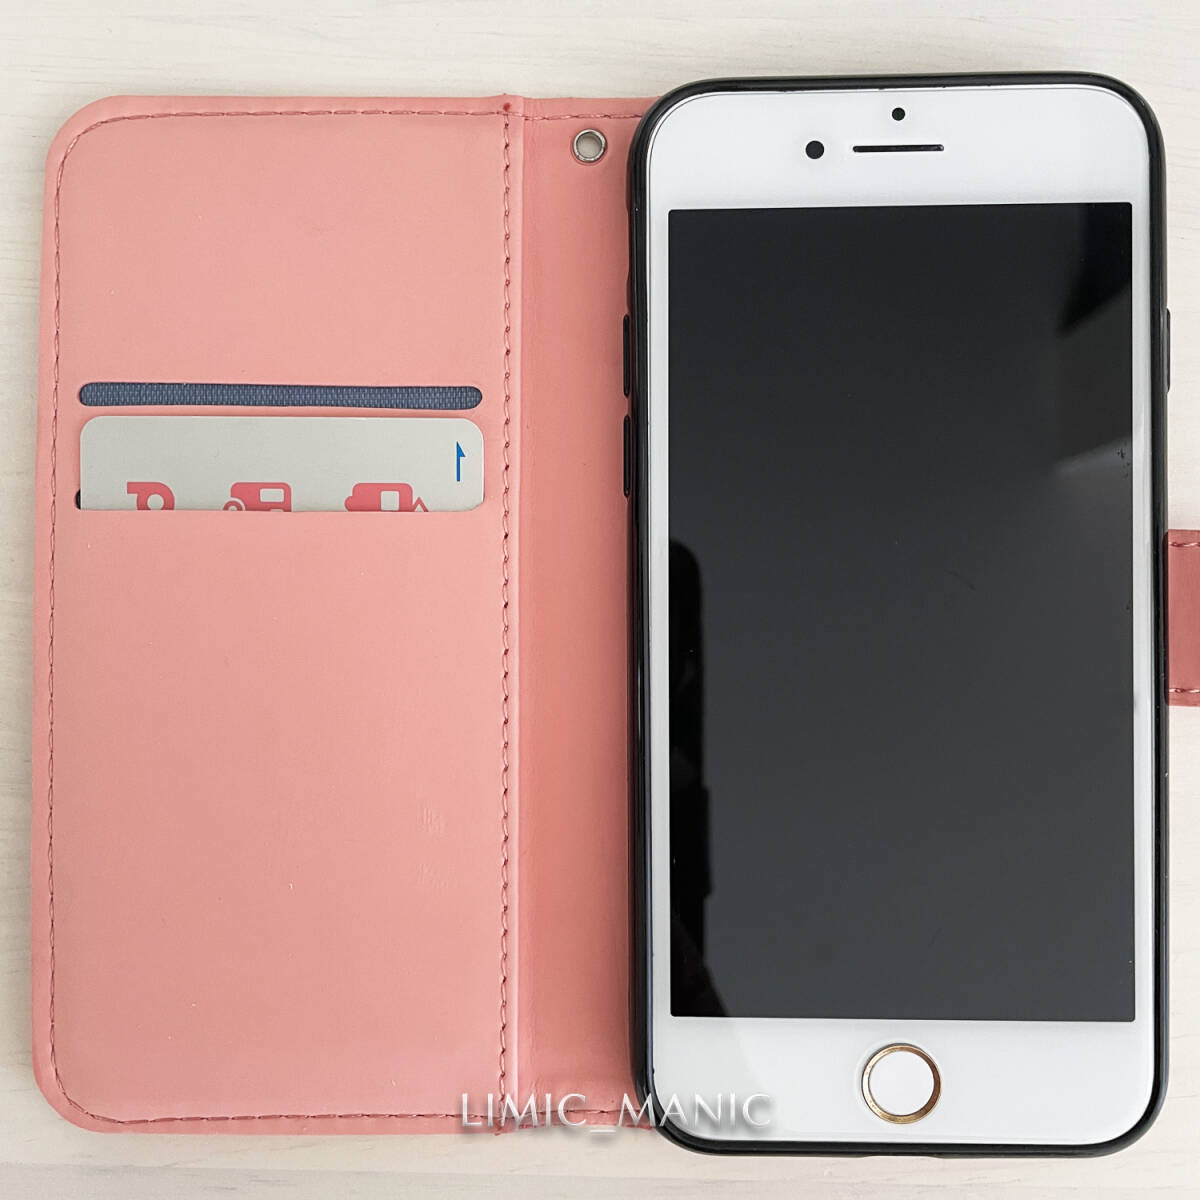 iPhone 7 8 SE (第2世代/第3世代) SE2 SE3 ケース スマホ 手帳型 カードケース ピンク pink エスニック風 曼荼羅模様 アイフォン